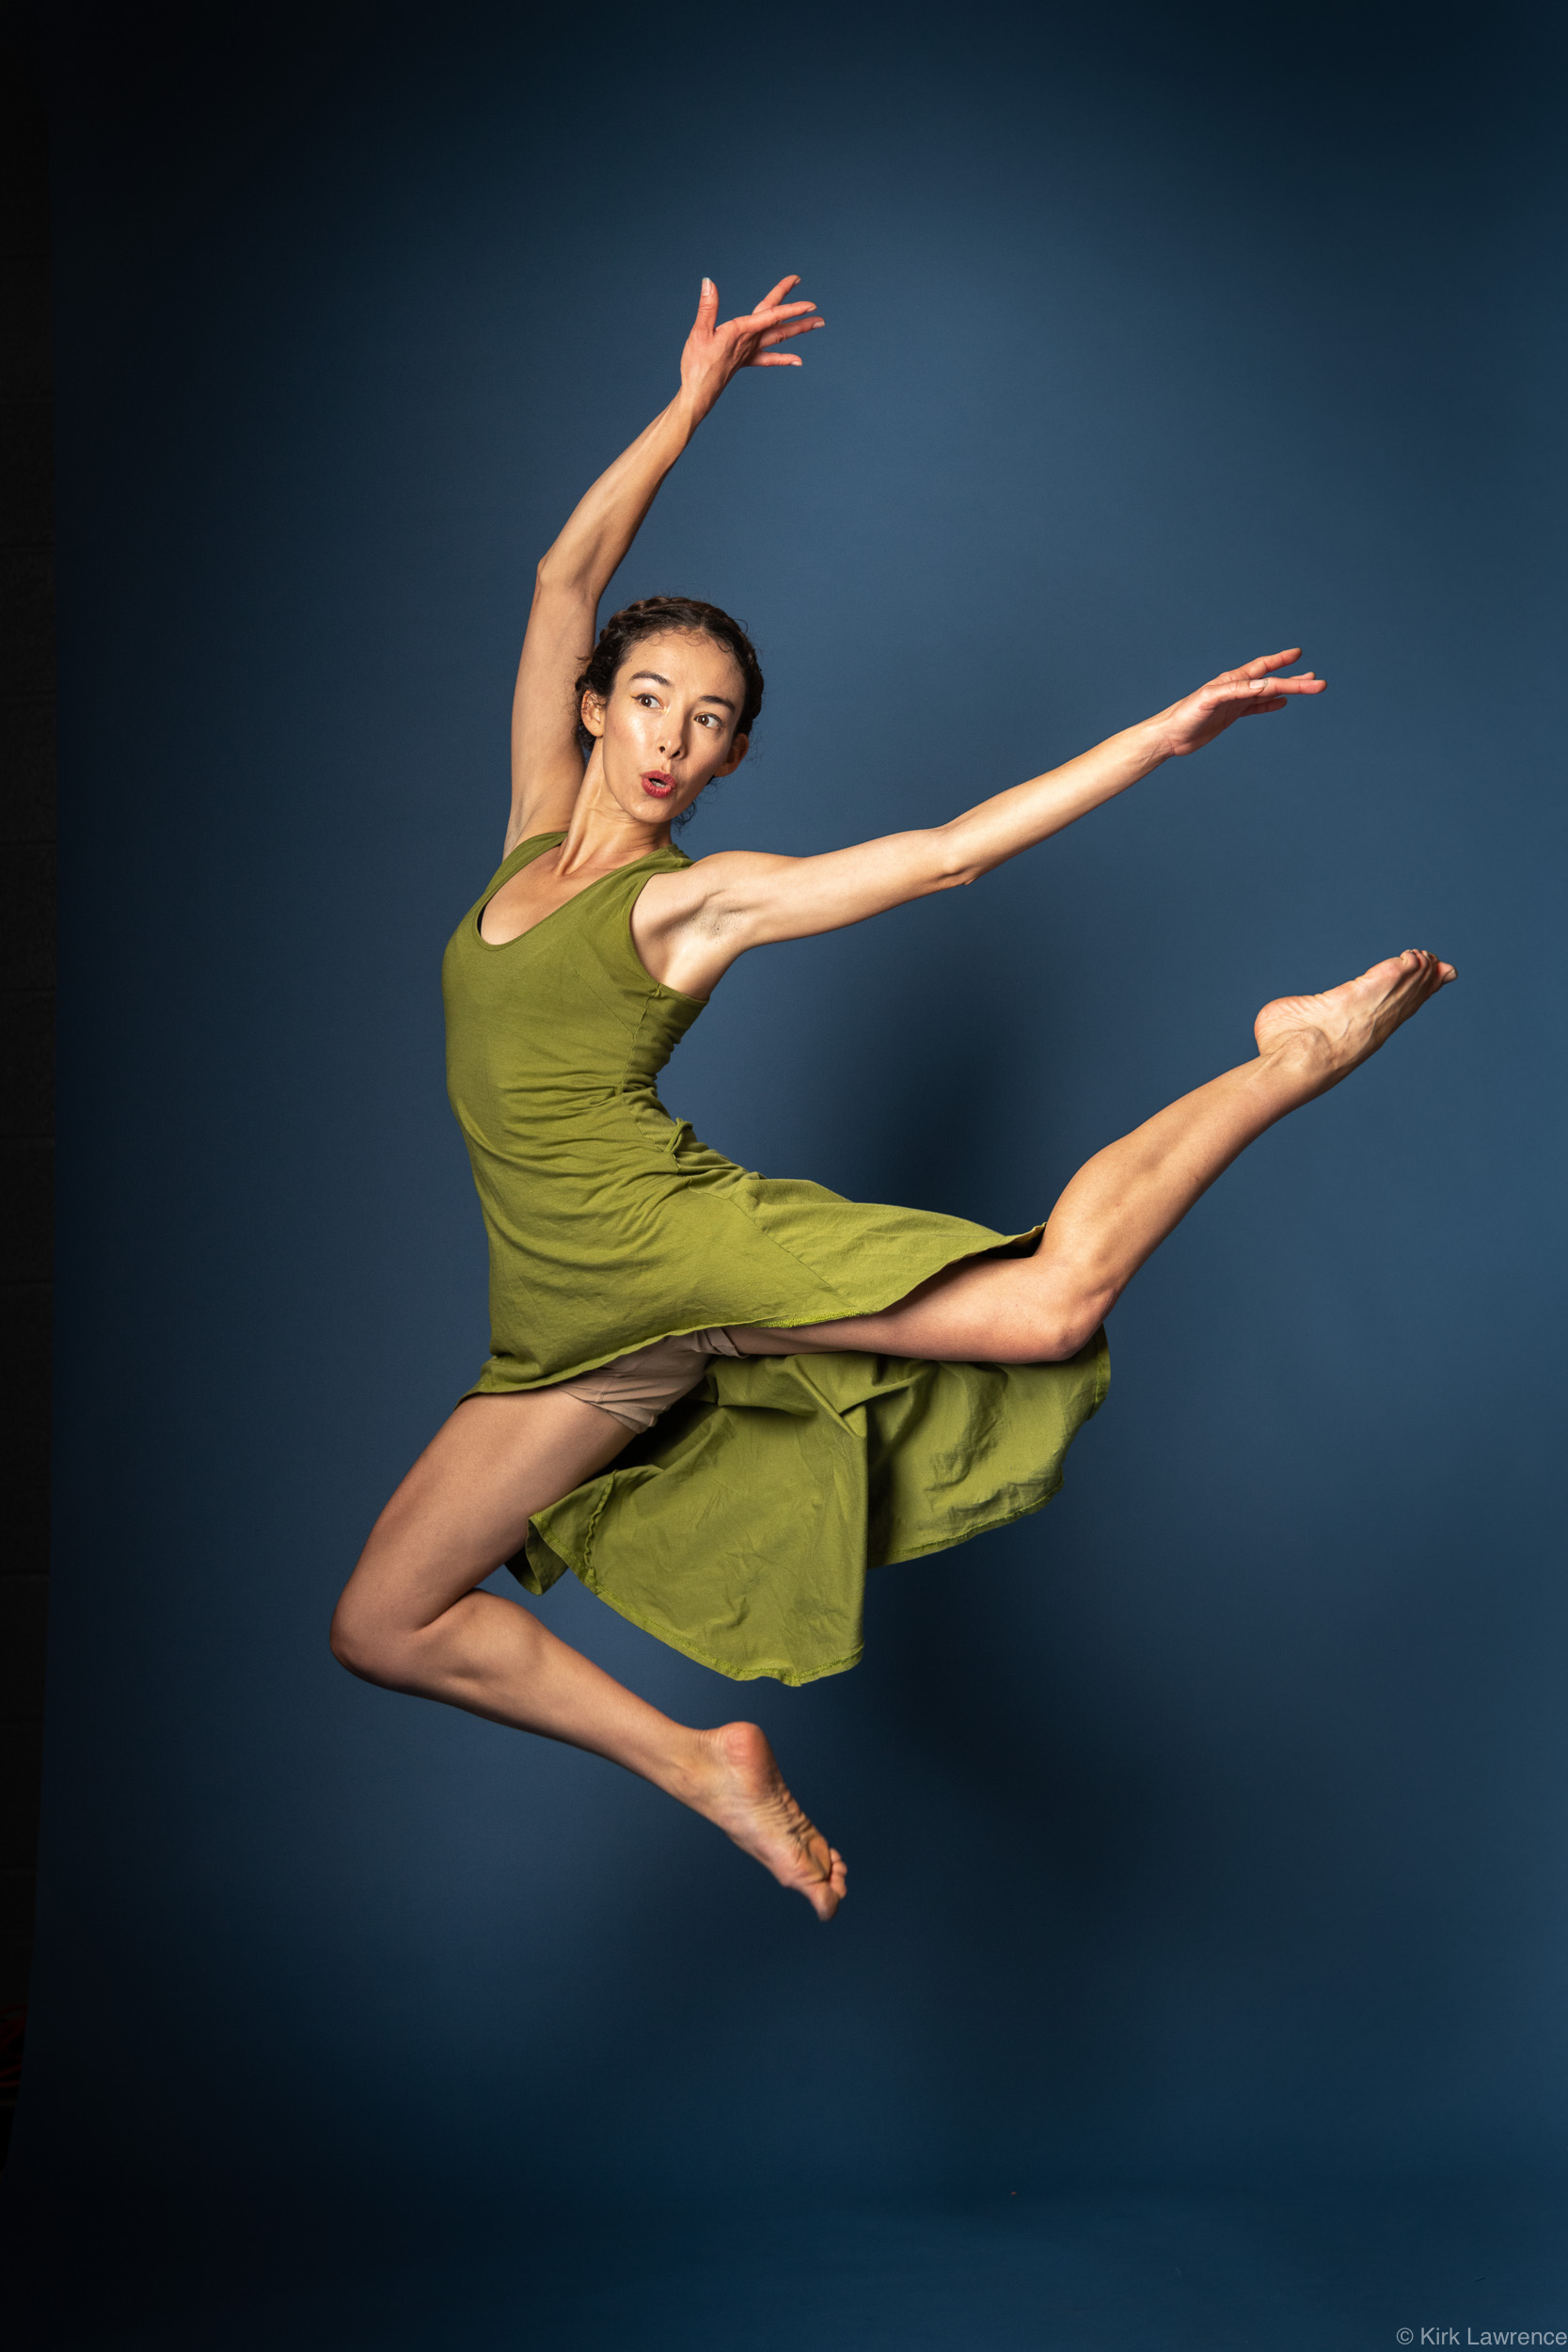 modern_dancer_jumping_green_dress_portrait.jpg